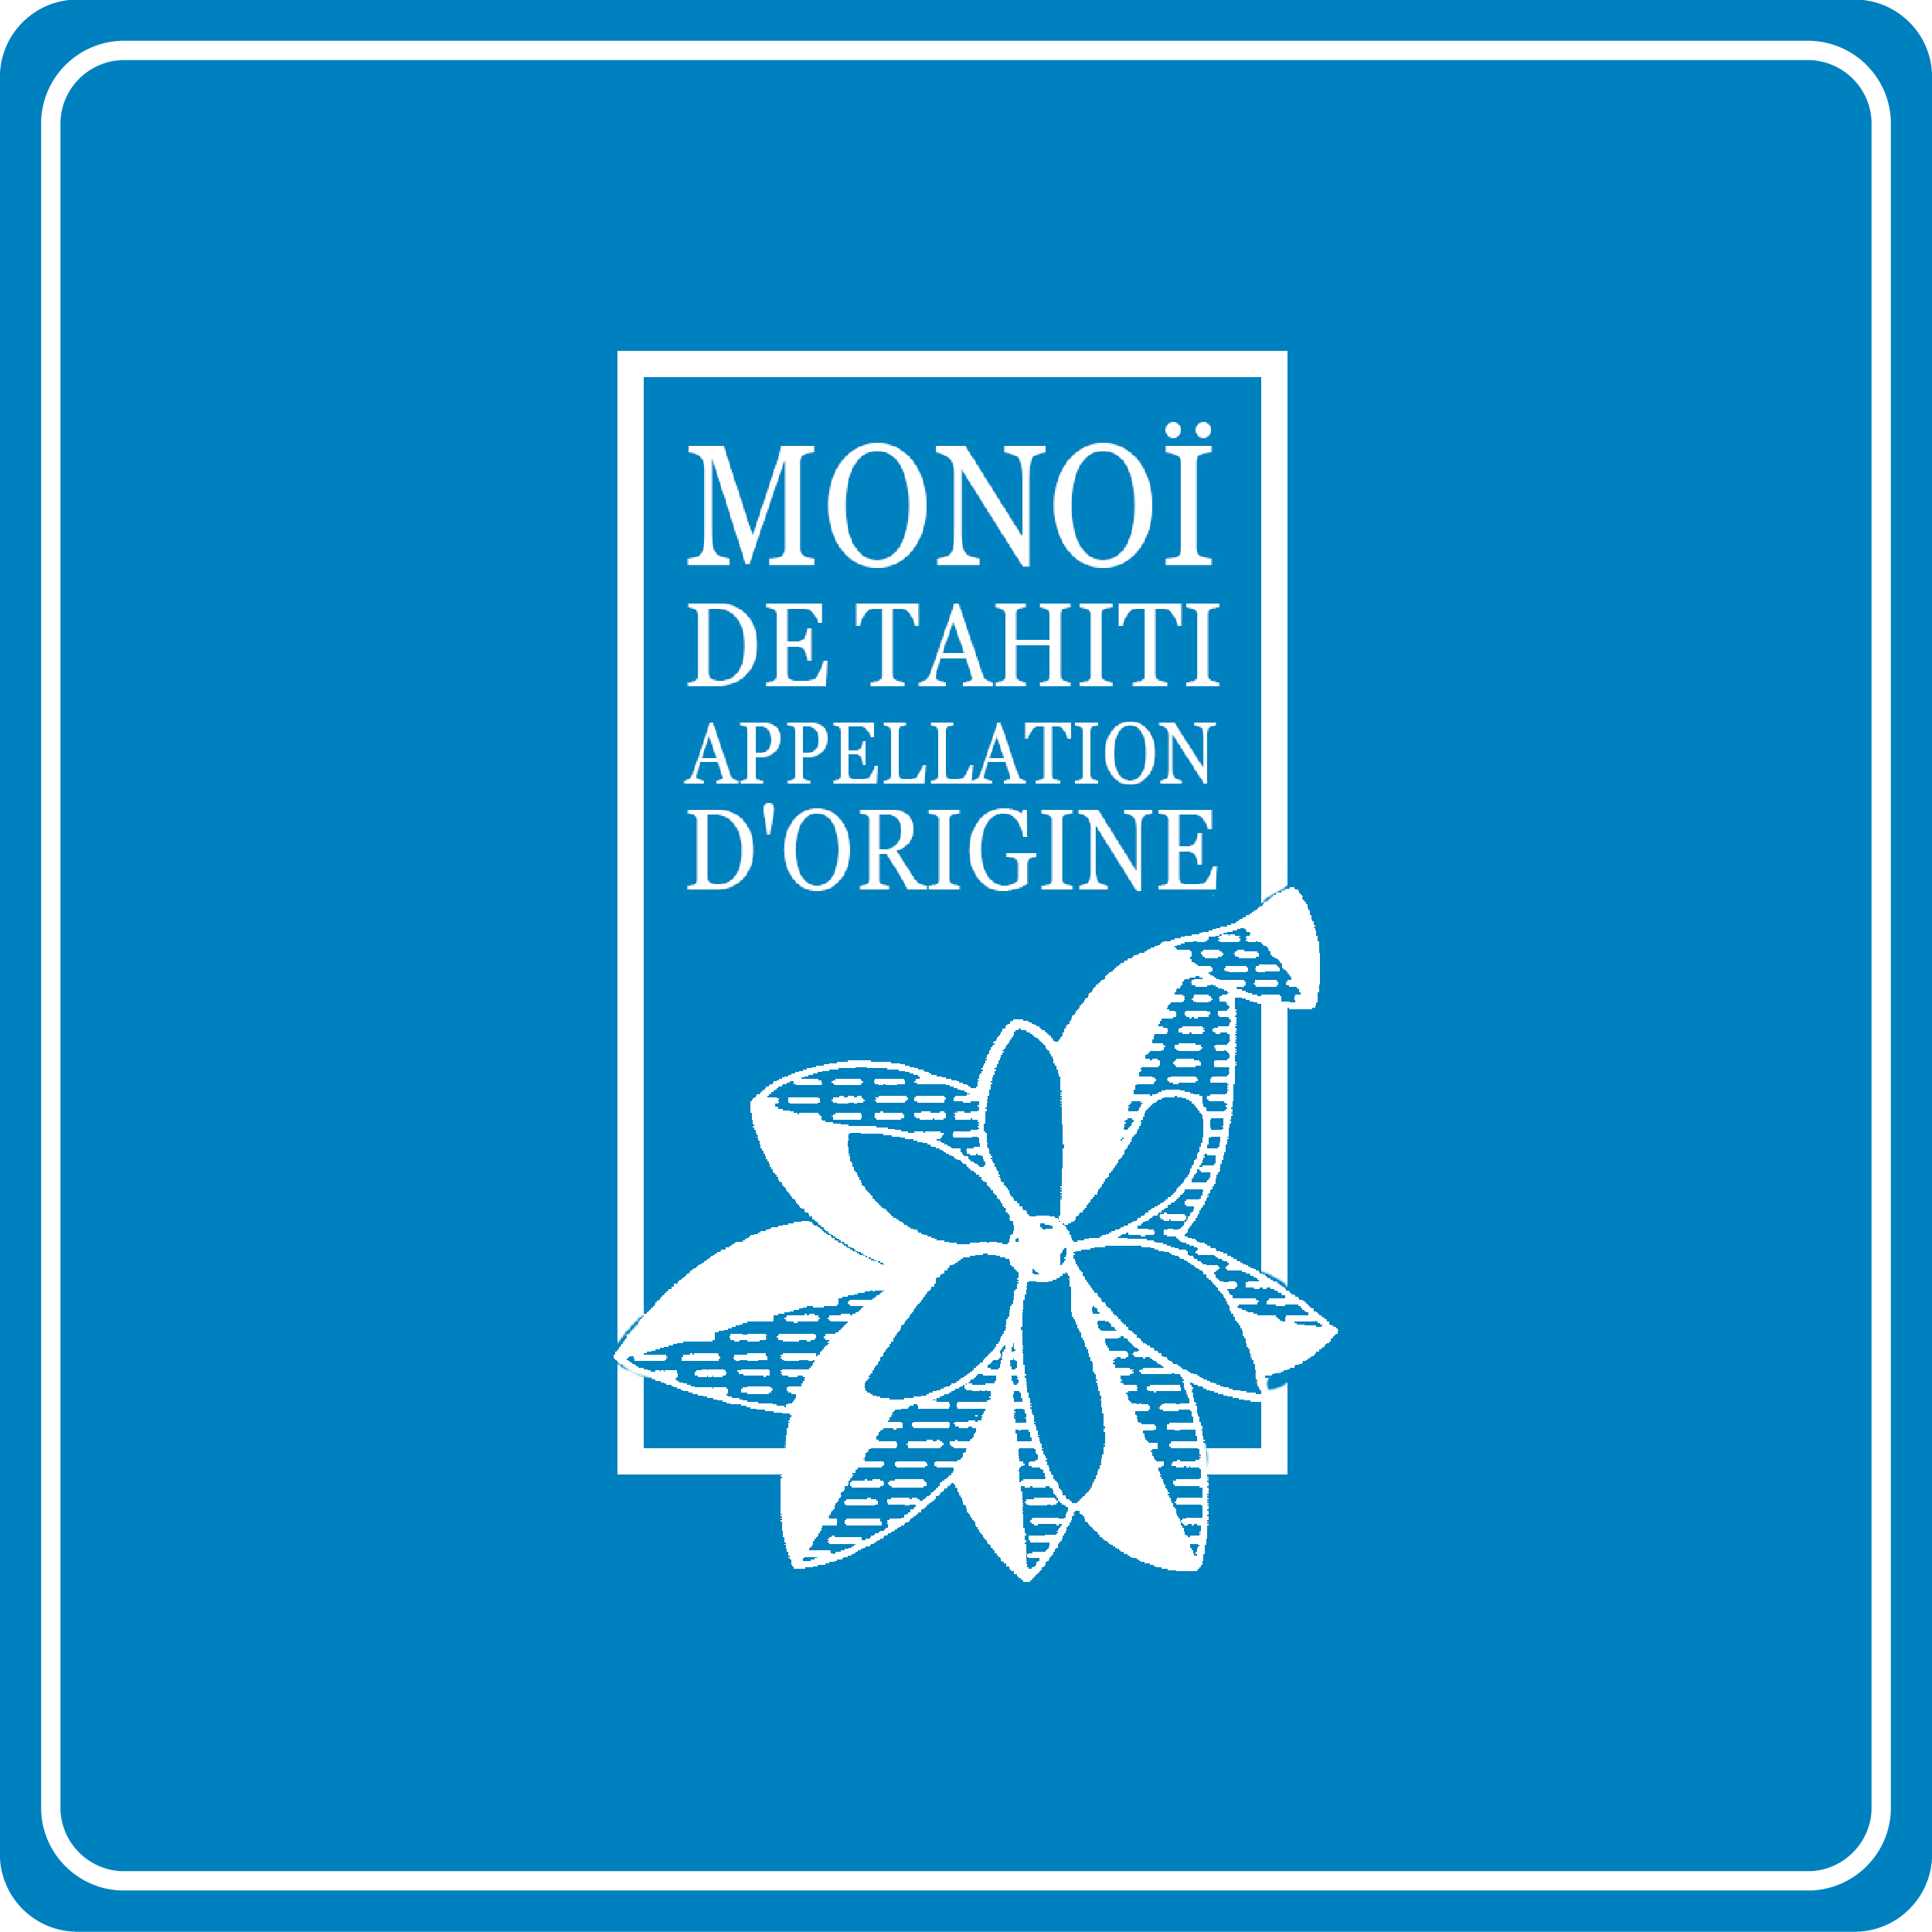 MONOI DE TAHITI